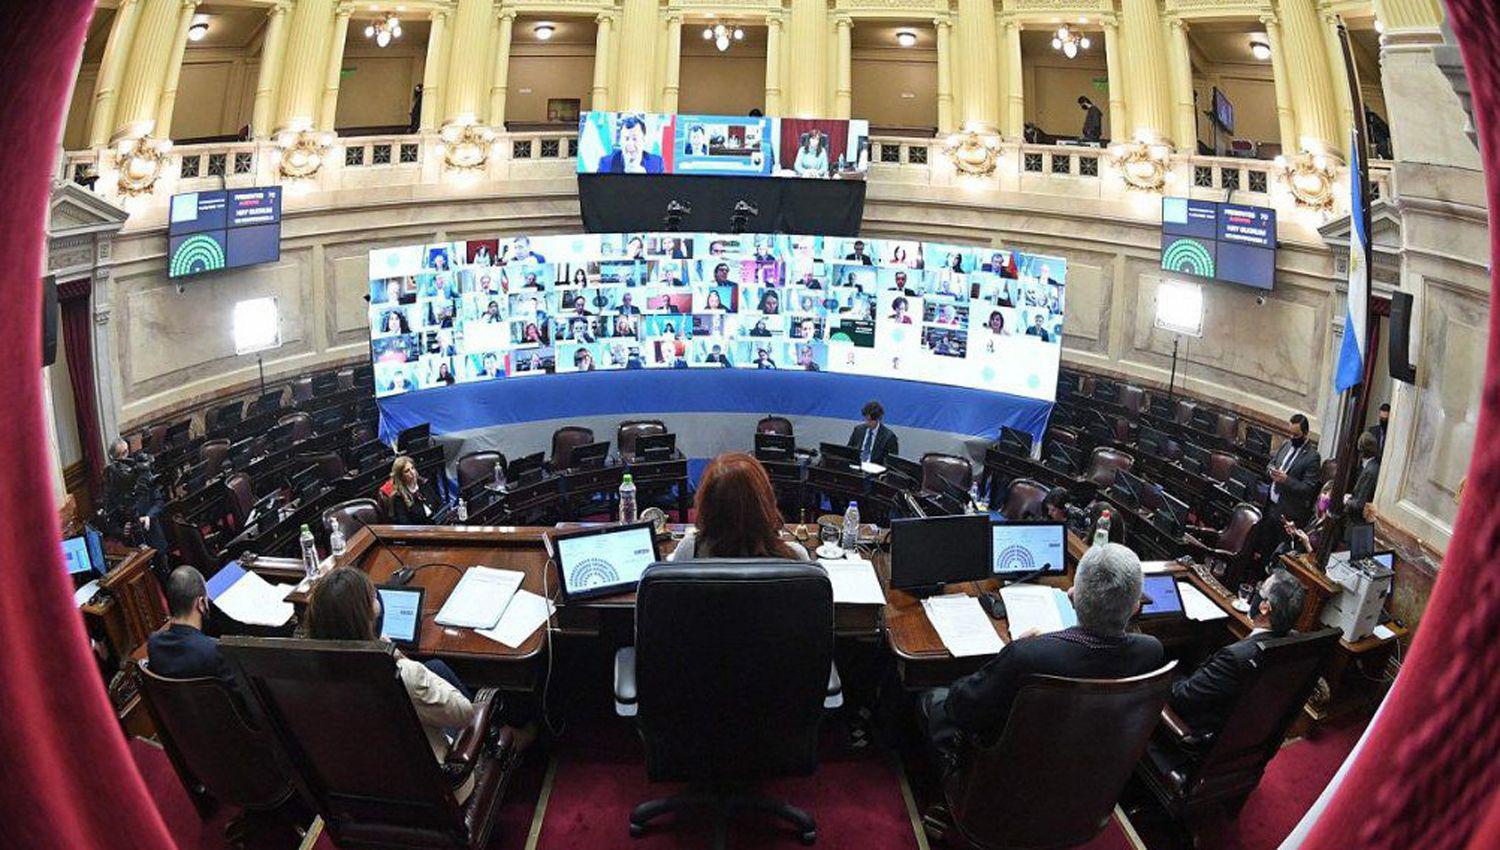 EN VIVO  El Senado de la Nacioacuten debate el proyecto de legalizacioacuten del aborto